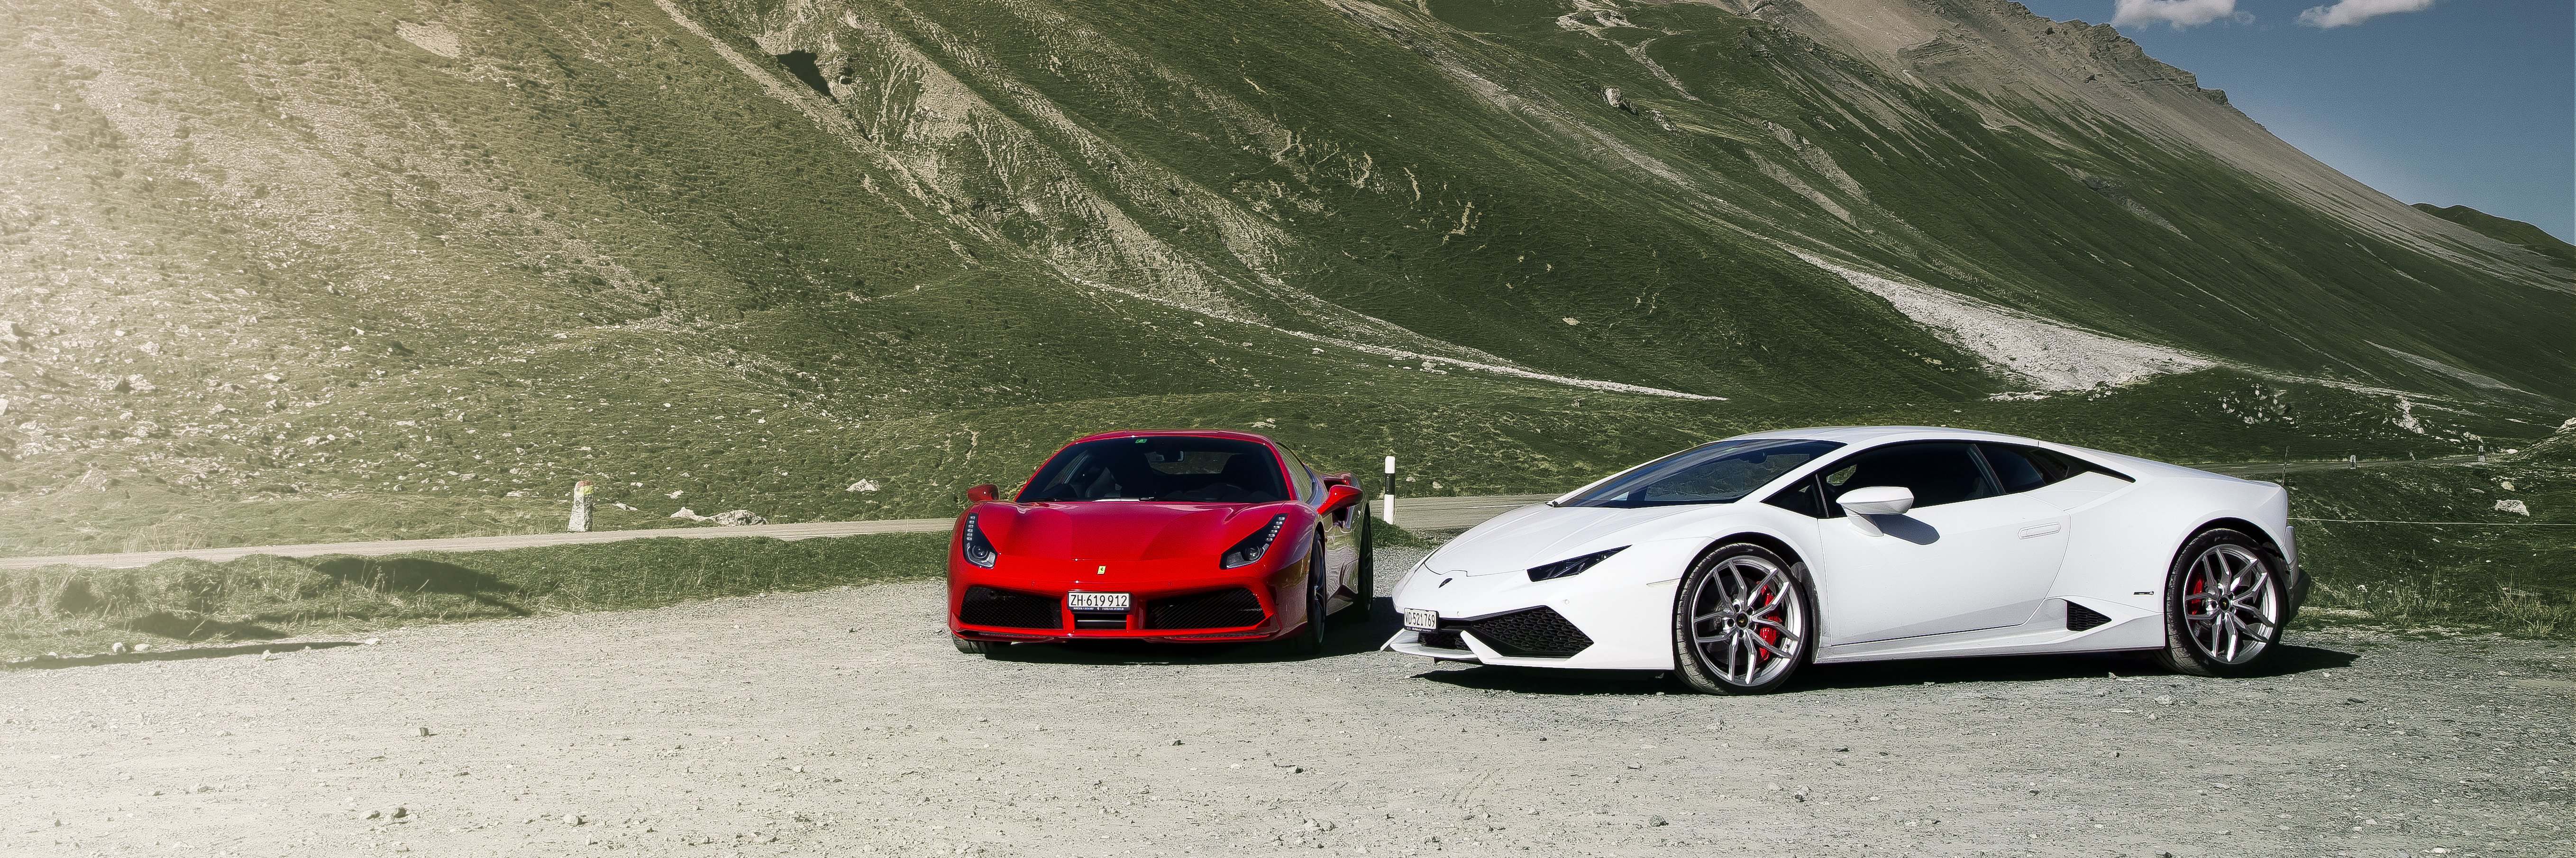 Supercar Experience - Ferrari 488GTB and Lamborghini 